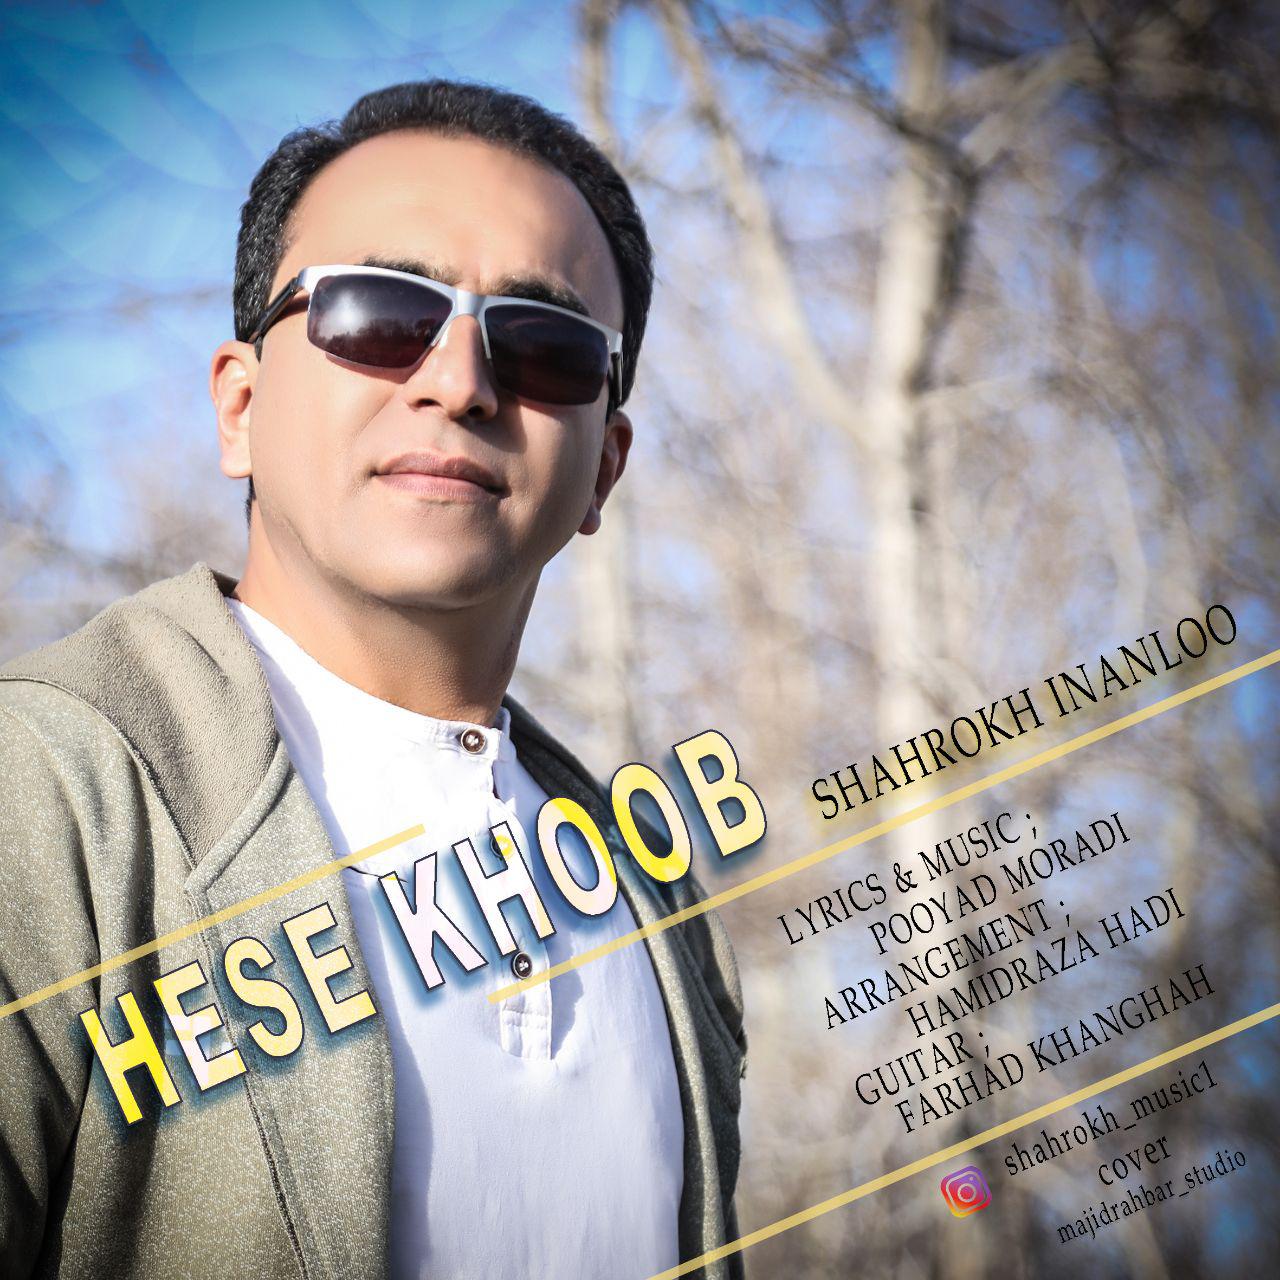  دانلود آهنگ جدید شاهرخ اینانلو - حس خوب | Download New Music By Shahrokh Inanloo - Hese Khoob